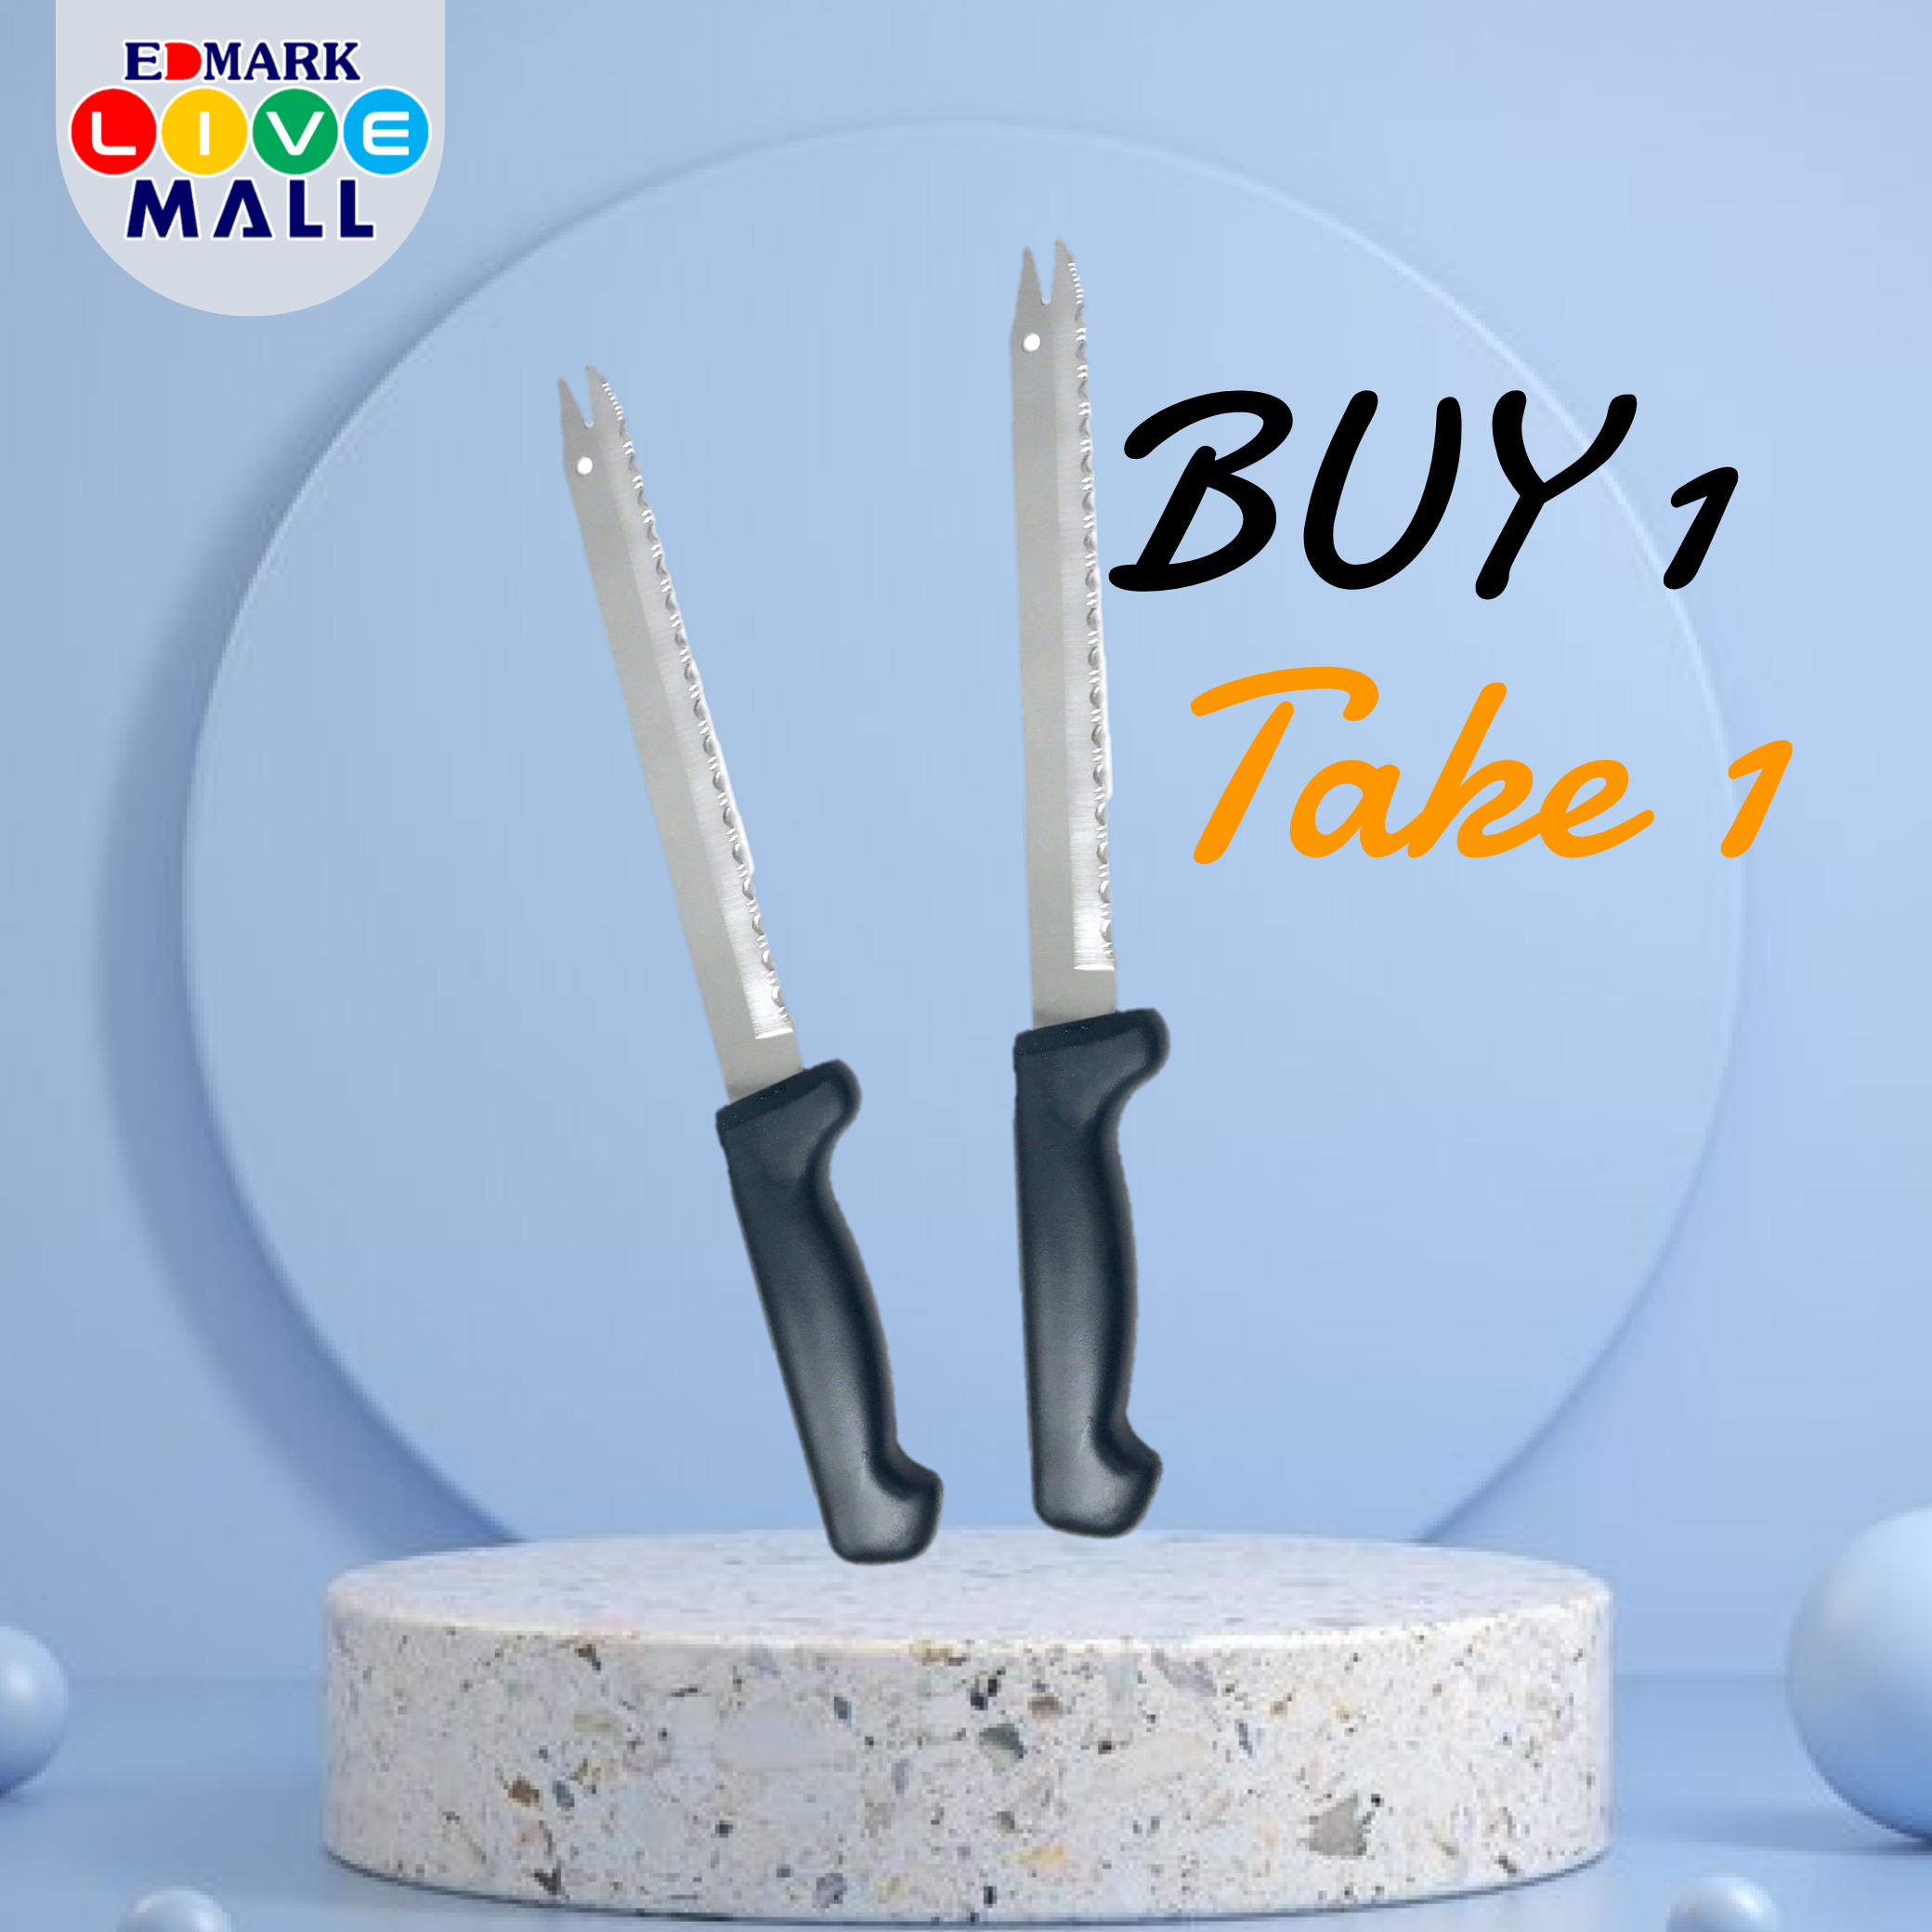 Edmark Super Edge Knife Buy 1 Take 1